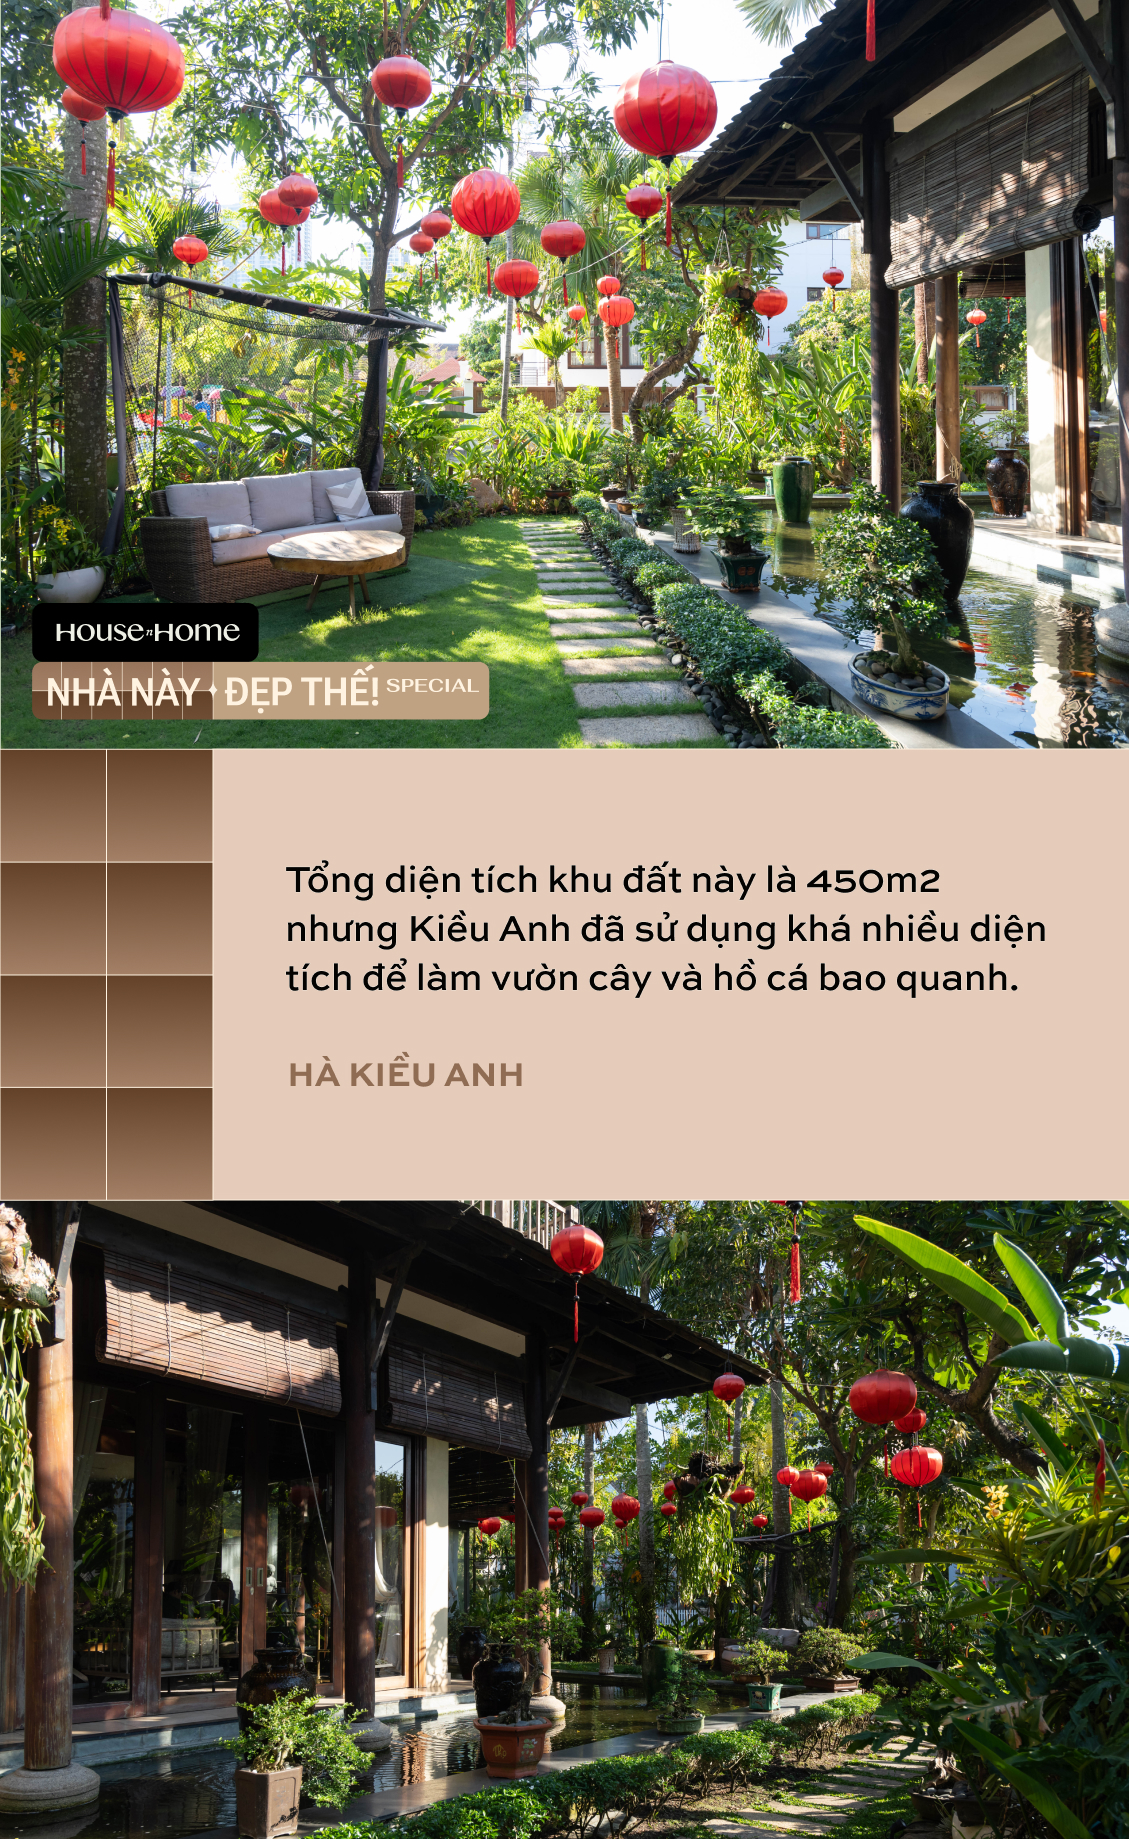 Biệt thự nhà vườn gần 20 năm tuổi của HH Hà Kiều Anh: Phong vị Á Đông cổ kính, khẳng định không bao giờ bán- Ảnh 11.